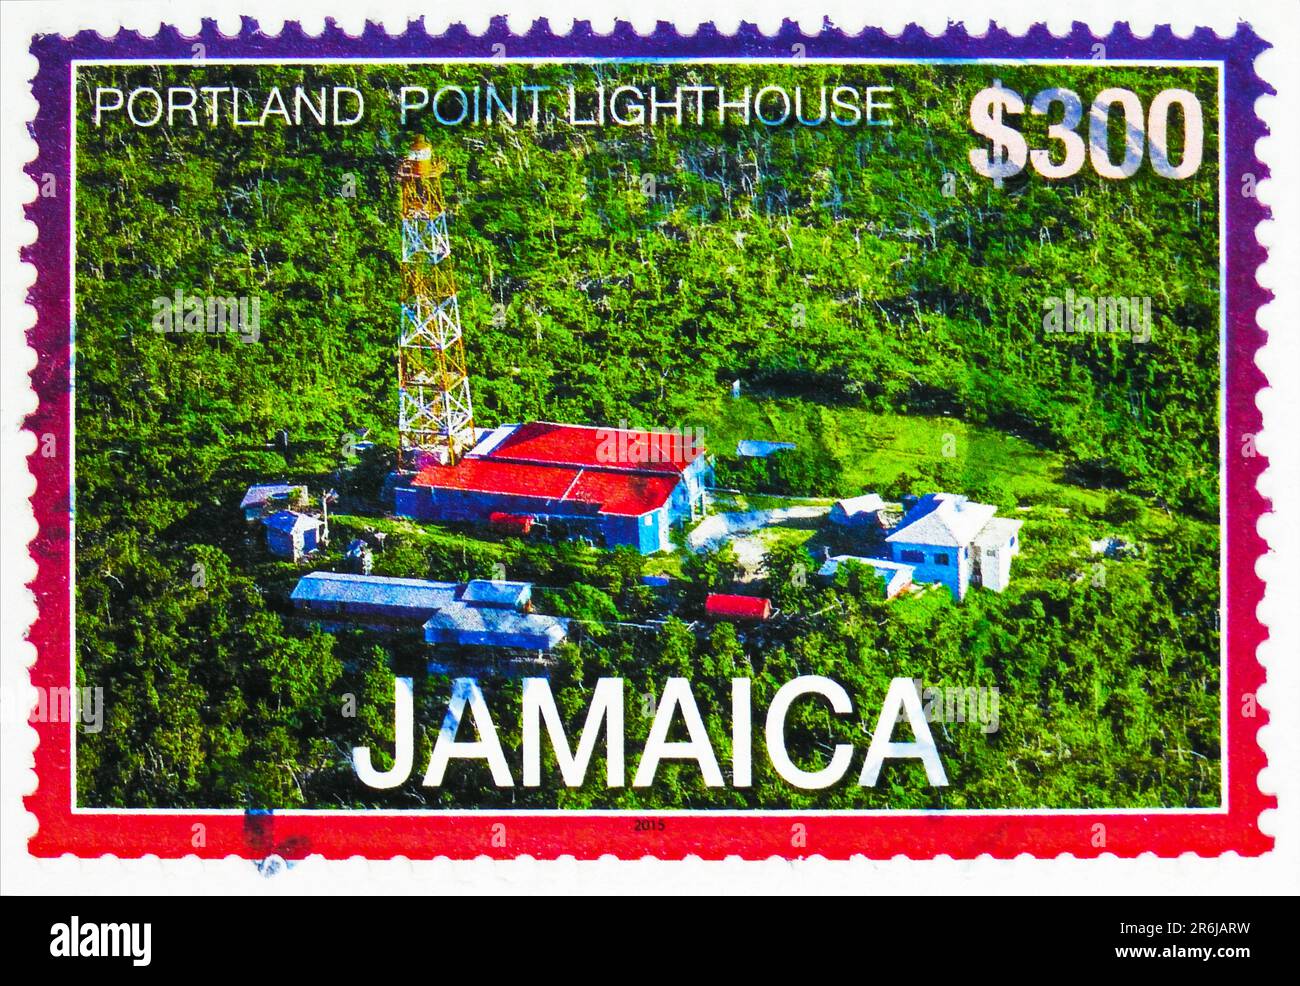 MOSCOU, RUSSIE - JUIN 3 2023: Timbre-poste imprimé en Jamaïque montre Portland point, série Lighthouses, vers 2016 Banque D'Images